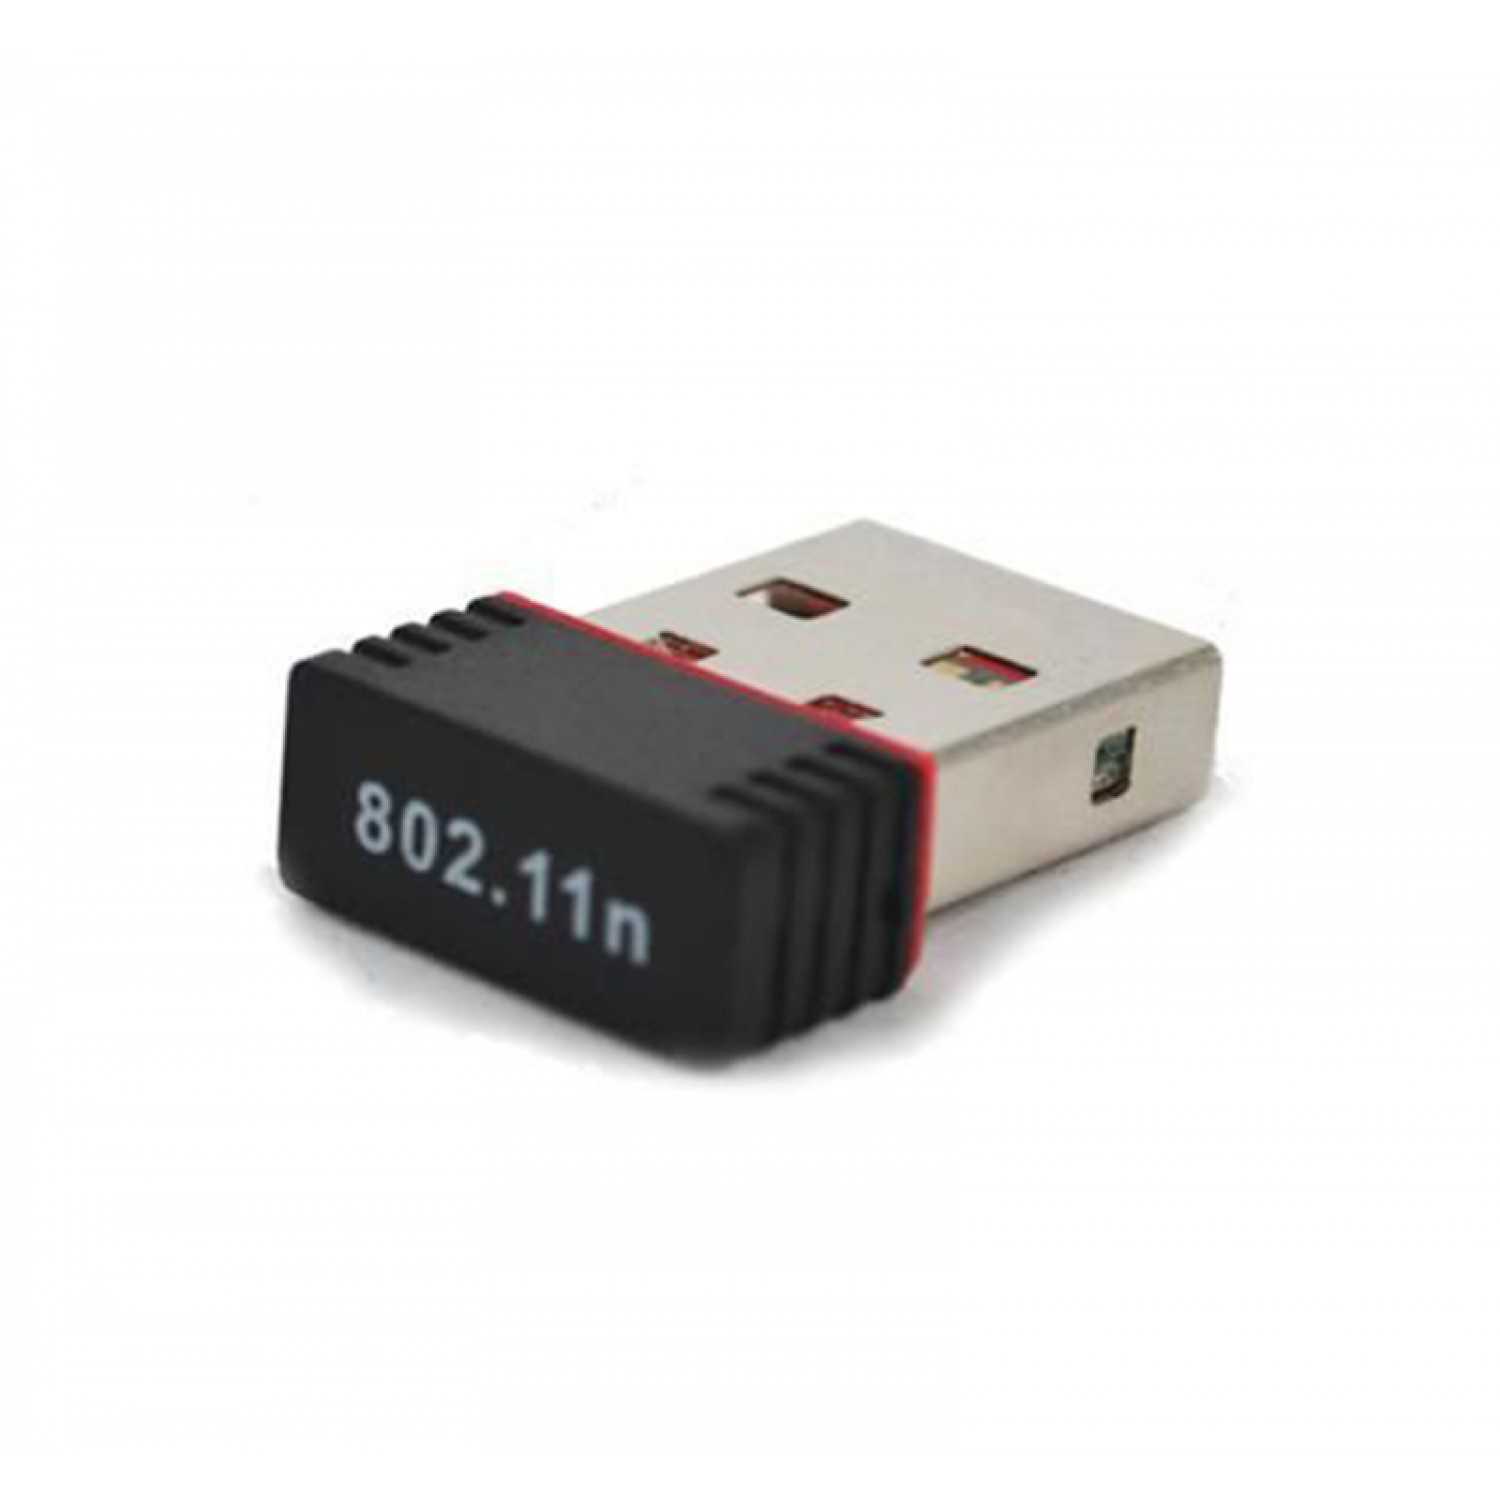 Драйвера wlan 802.11. USB Wi-Fi адаптер (802.11n). WIFI адаптер Wireless lan USB 802.11 N. Wireless 11n USB Adapter. 802.11N /B/G Mini Wireless lan USB.